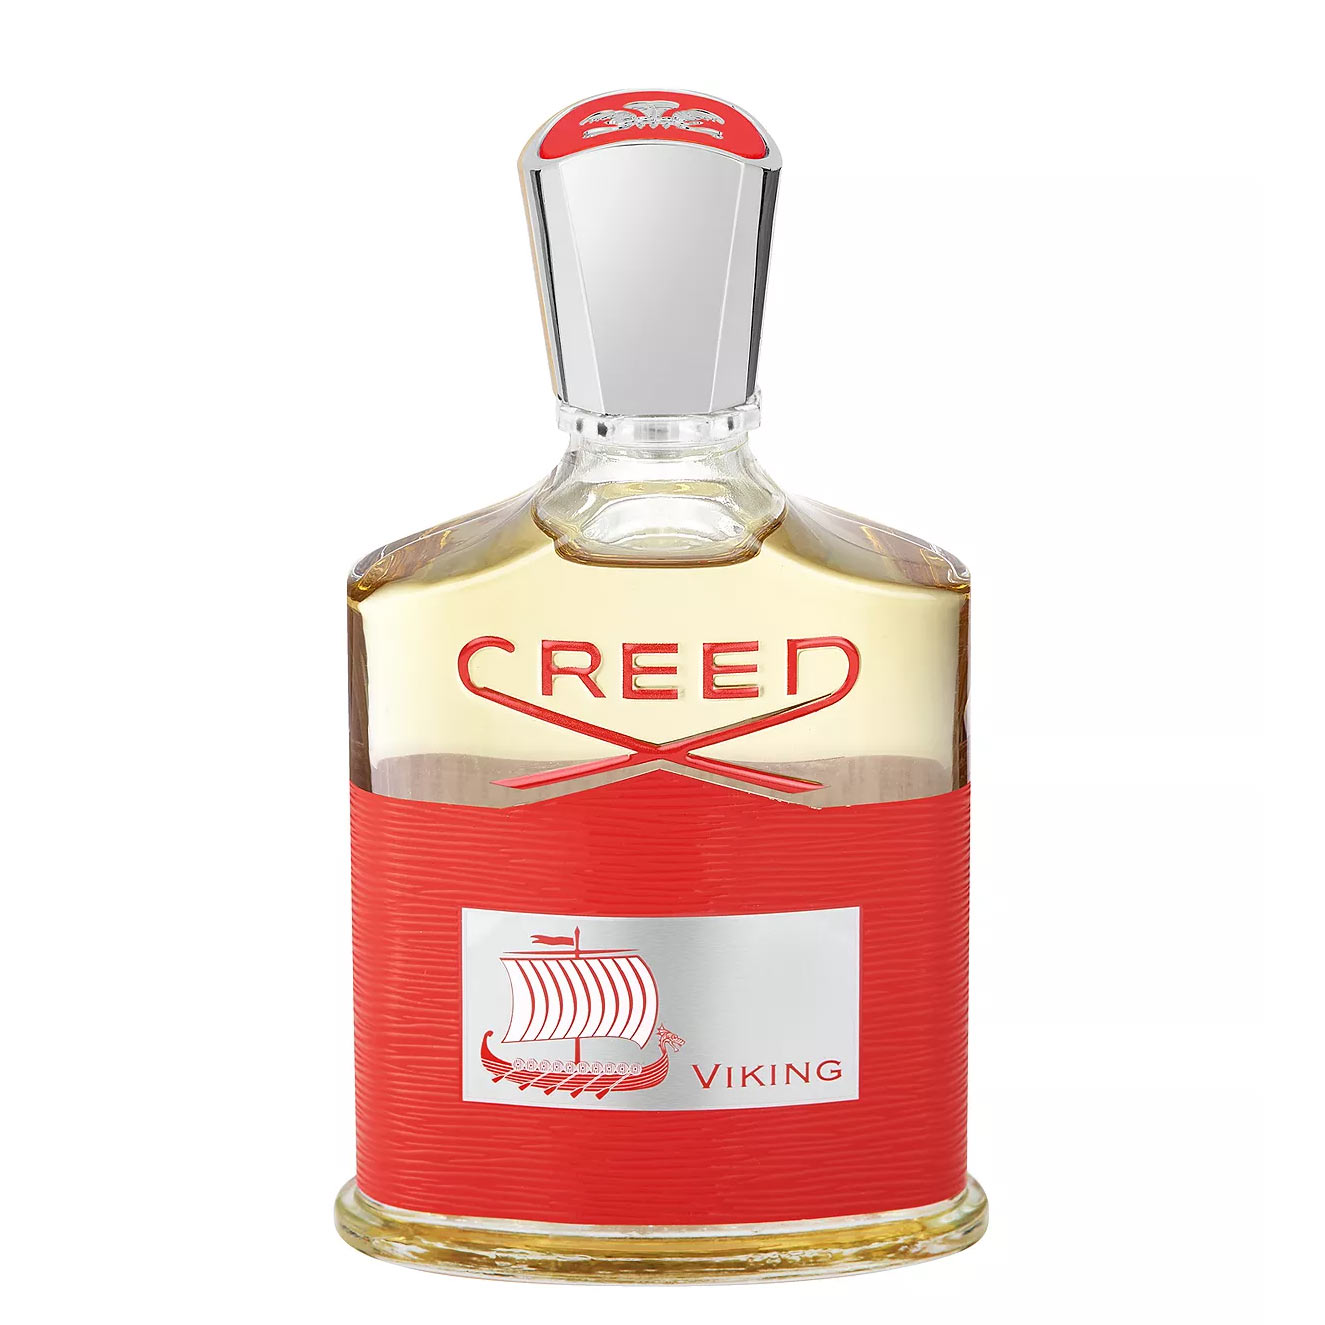 Creed-Viking-Creed